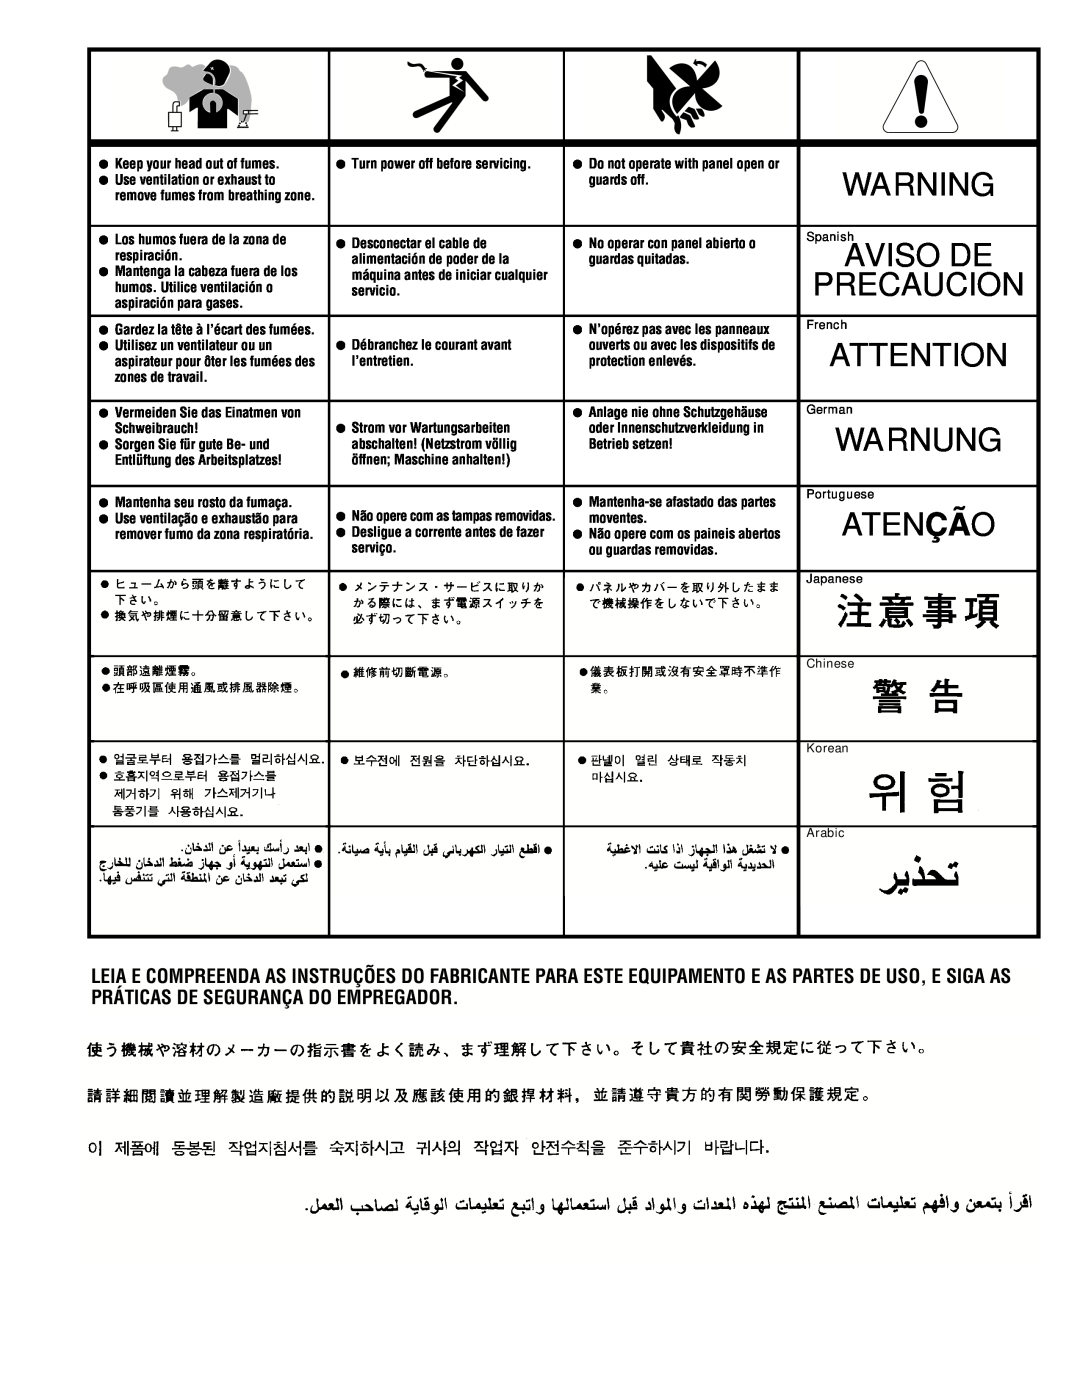 Lincoln Electric IM463-A manual Warnung, Atenção, Precaucion, Aviso De 